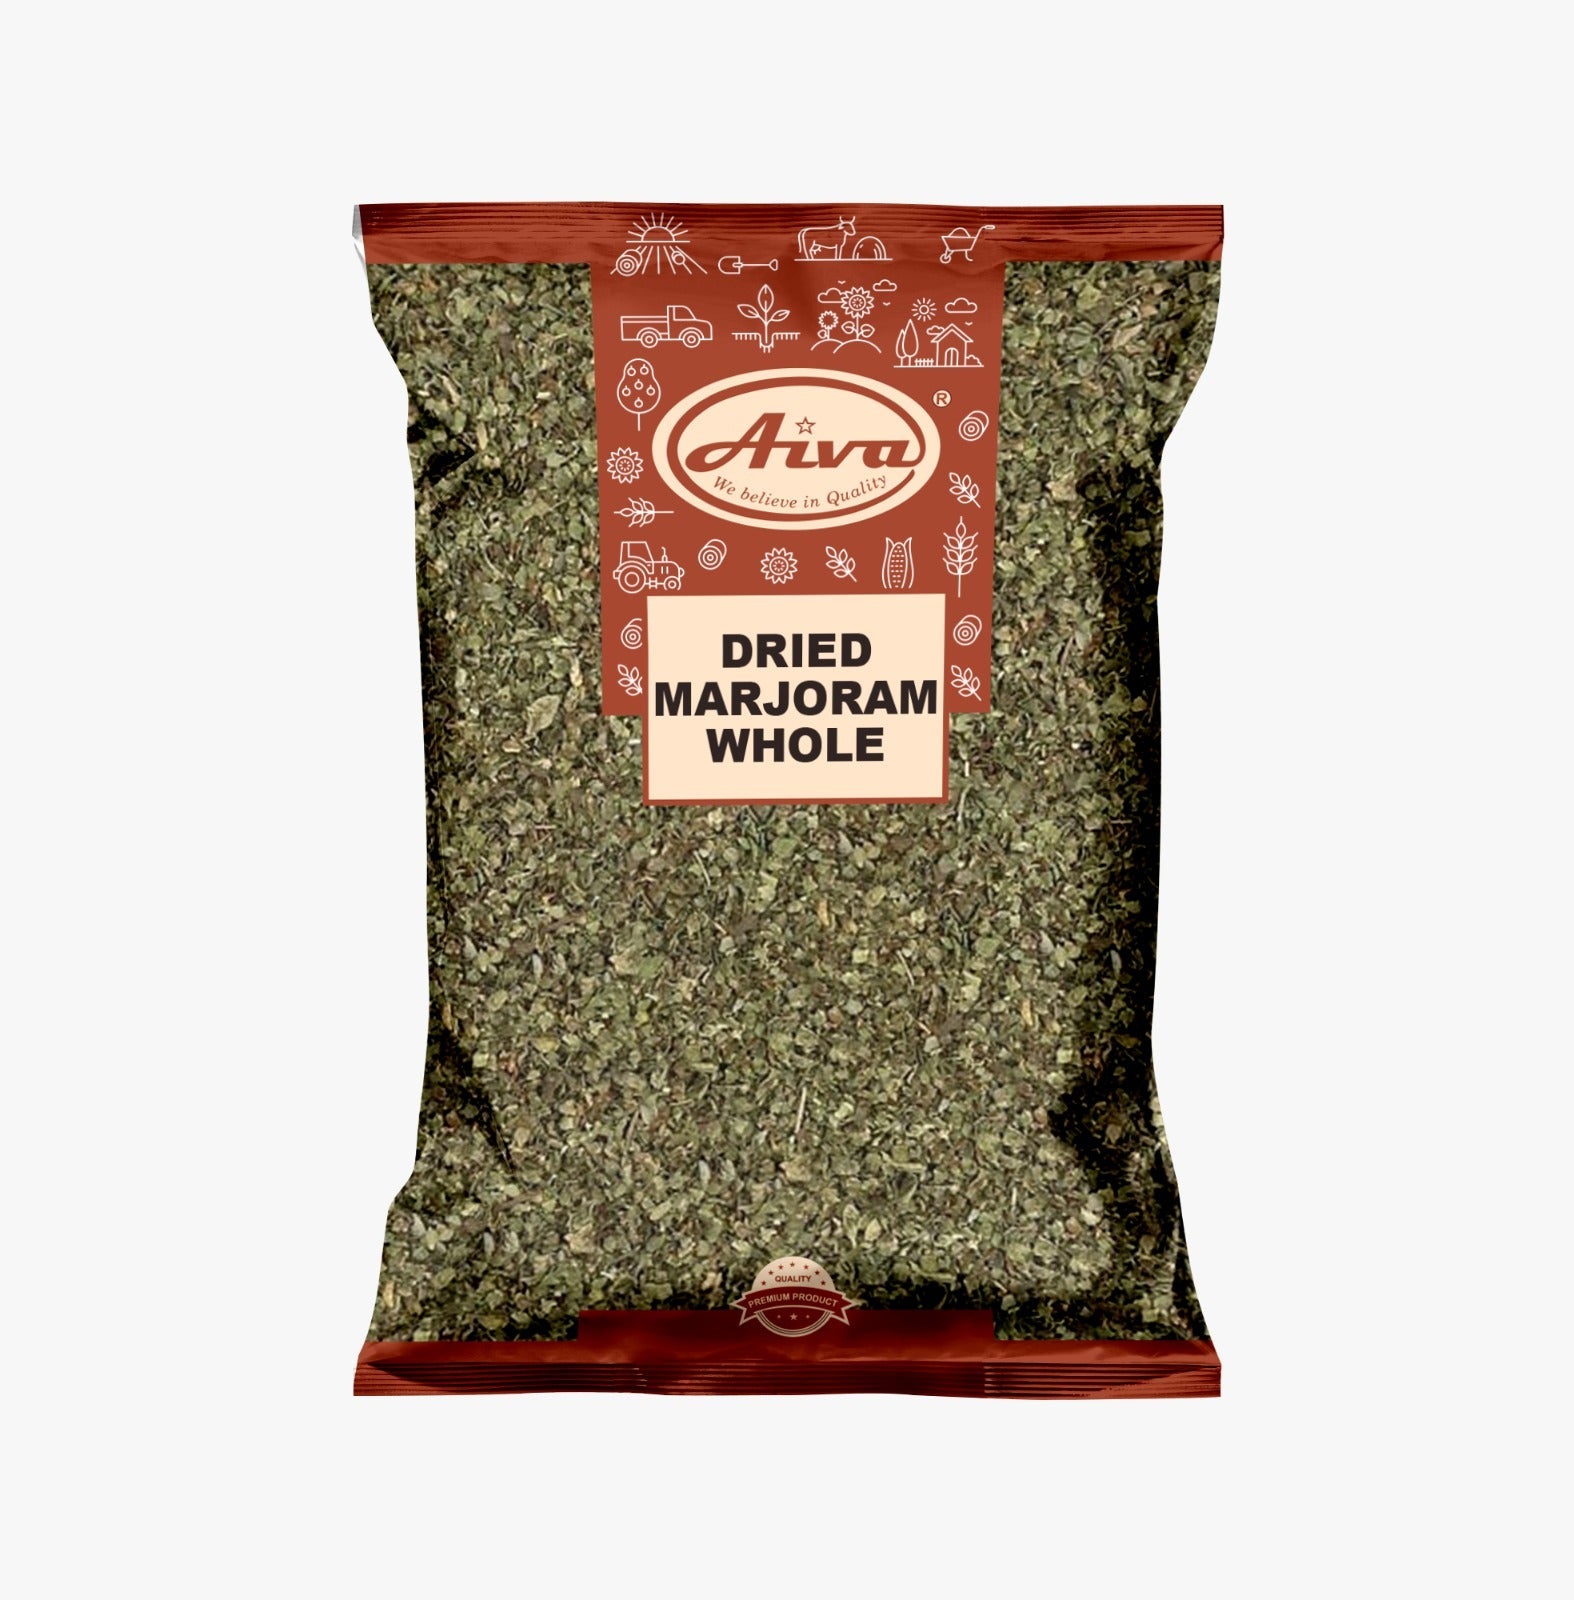 Aiva Dried Marjoram Whole / Marjoram Herb / Culinary Marjoram Leaves-1